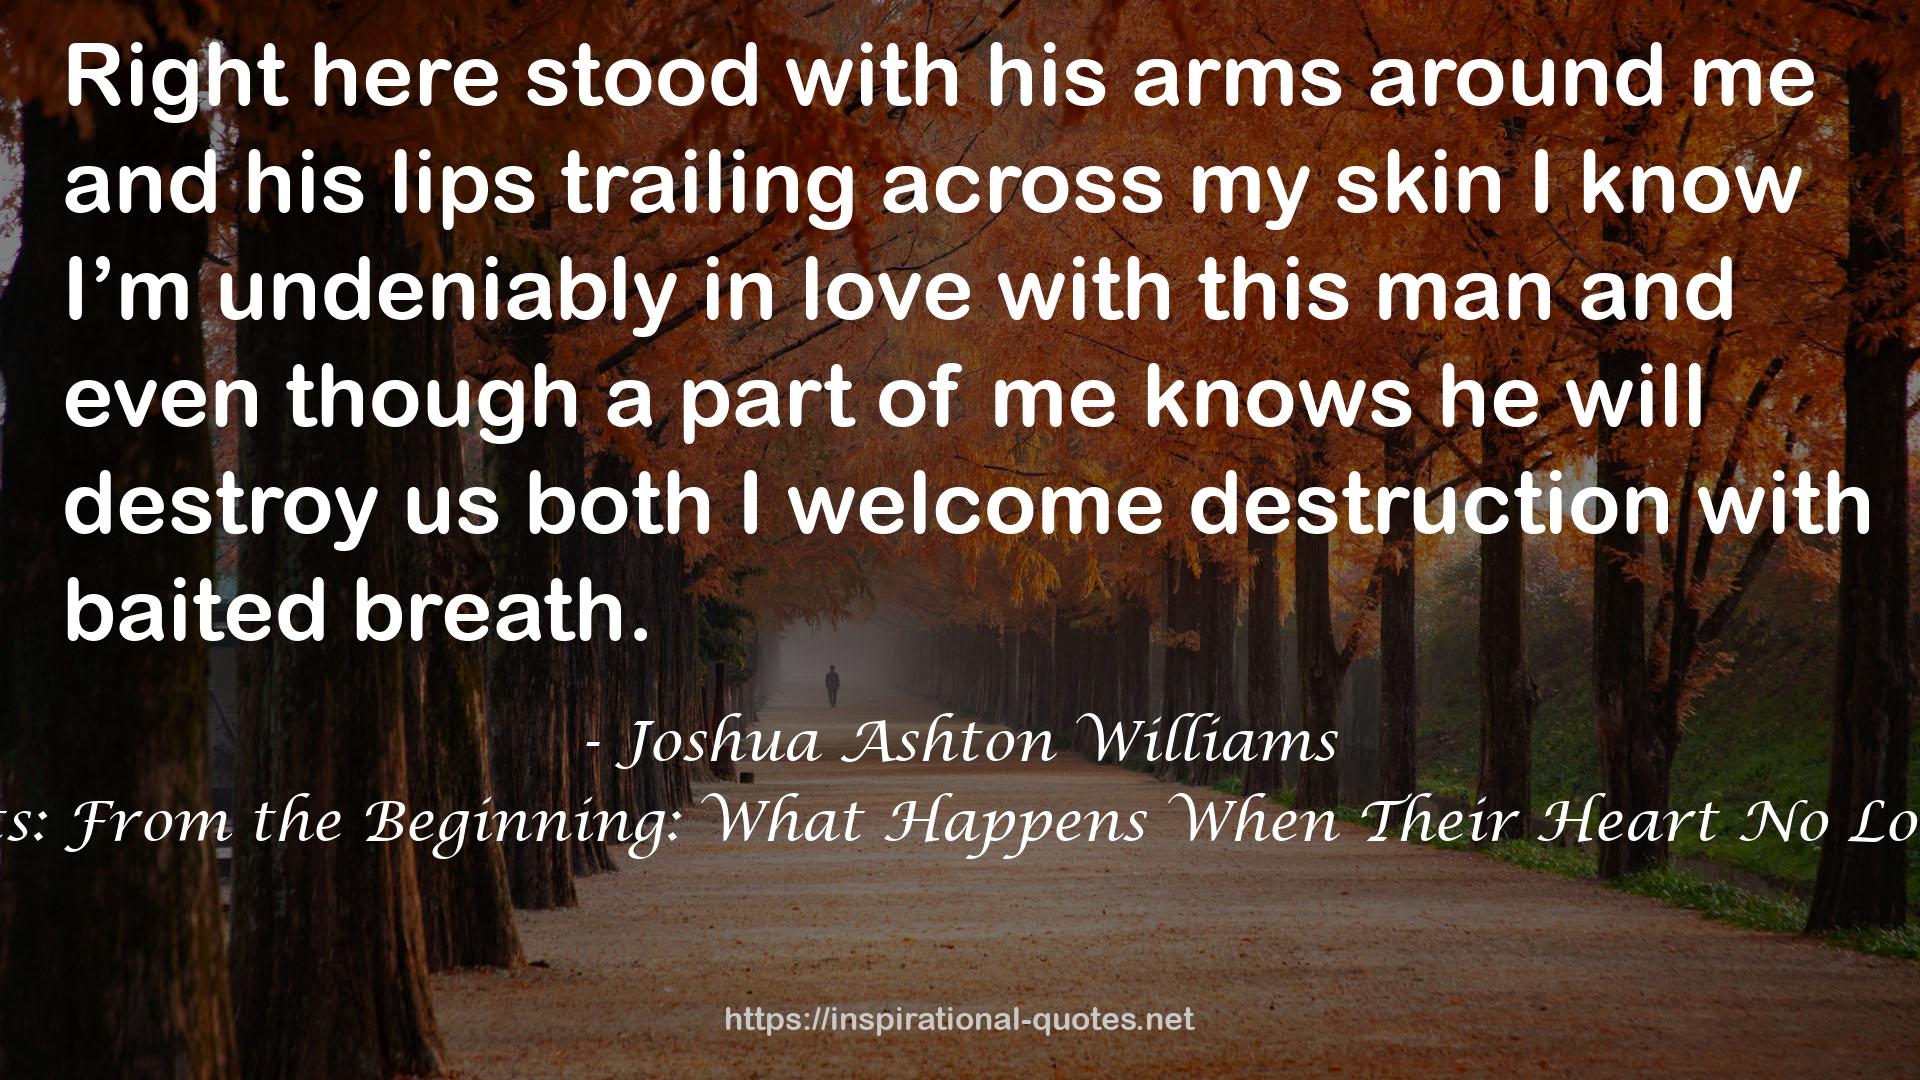 Joshua Ashton Williams QUOTES